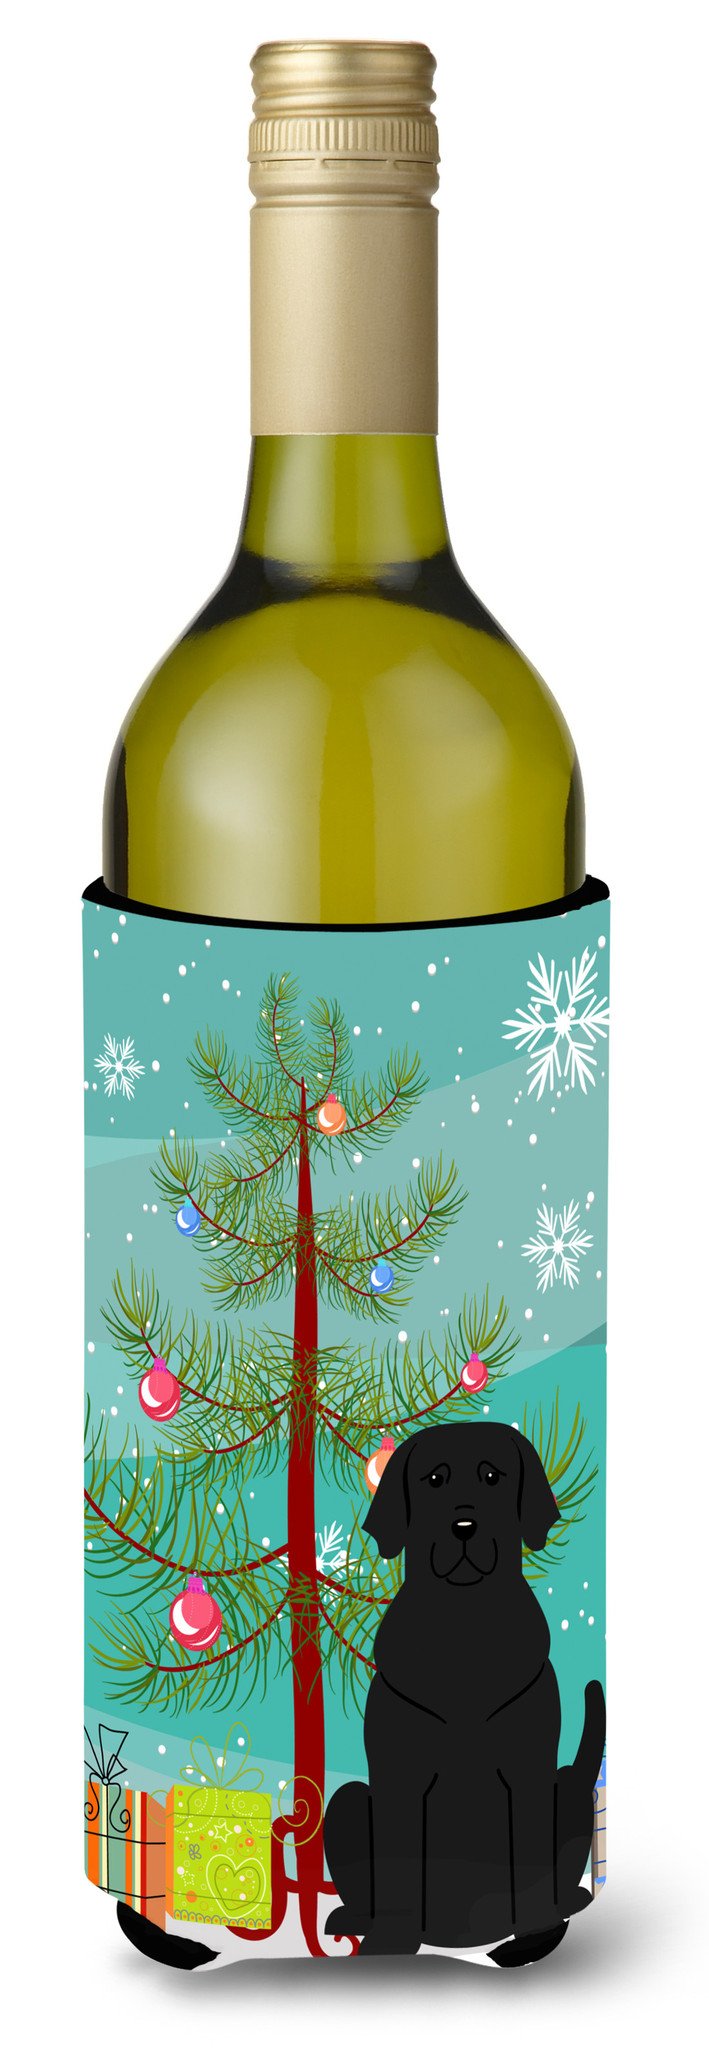 Merry Christmas Tree Black Labrador Wine Bottle Beverge Insulator Hugger BB4182LITERK by Caroline's Treasures